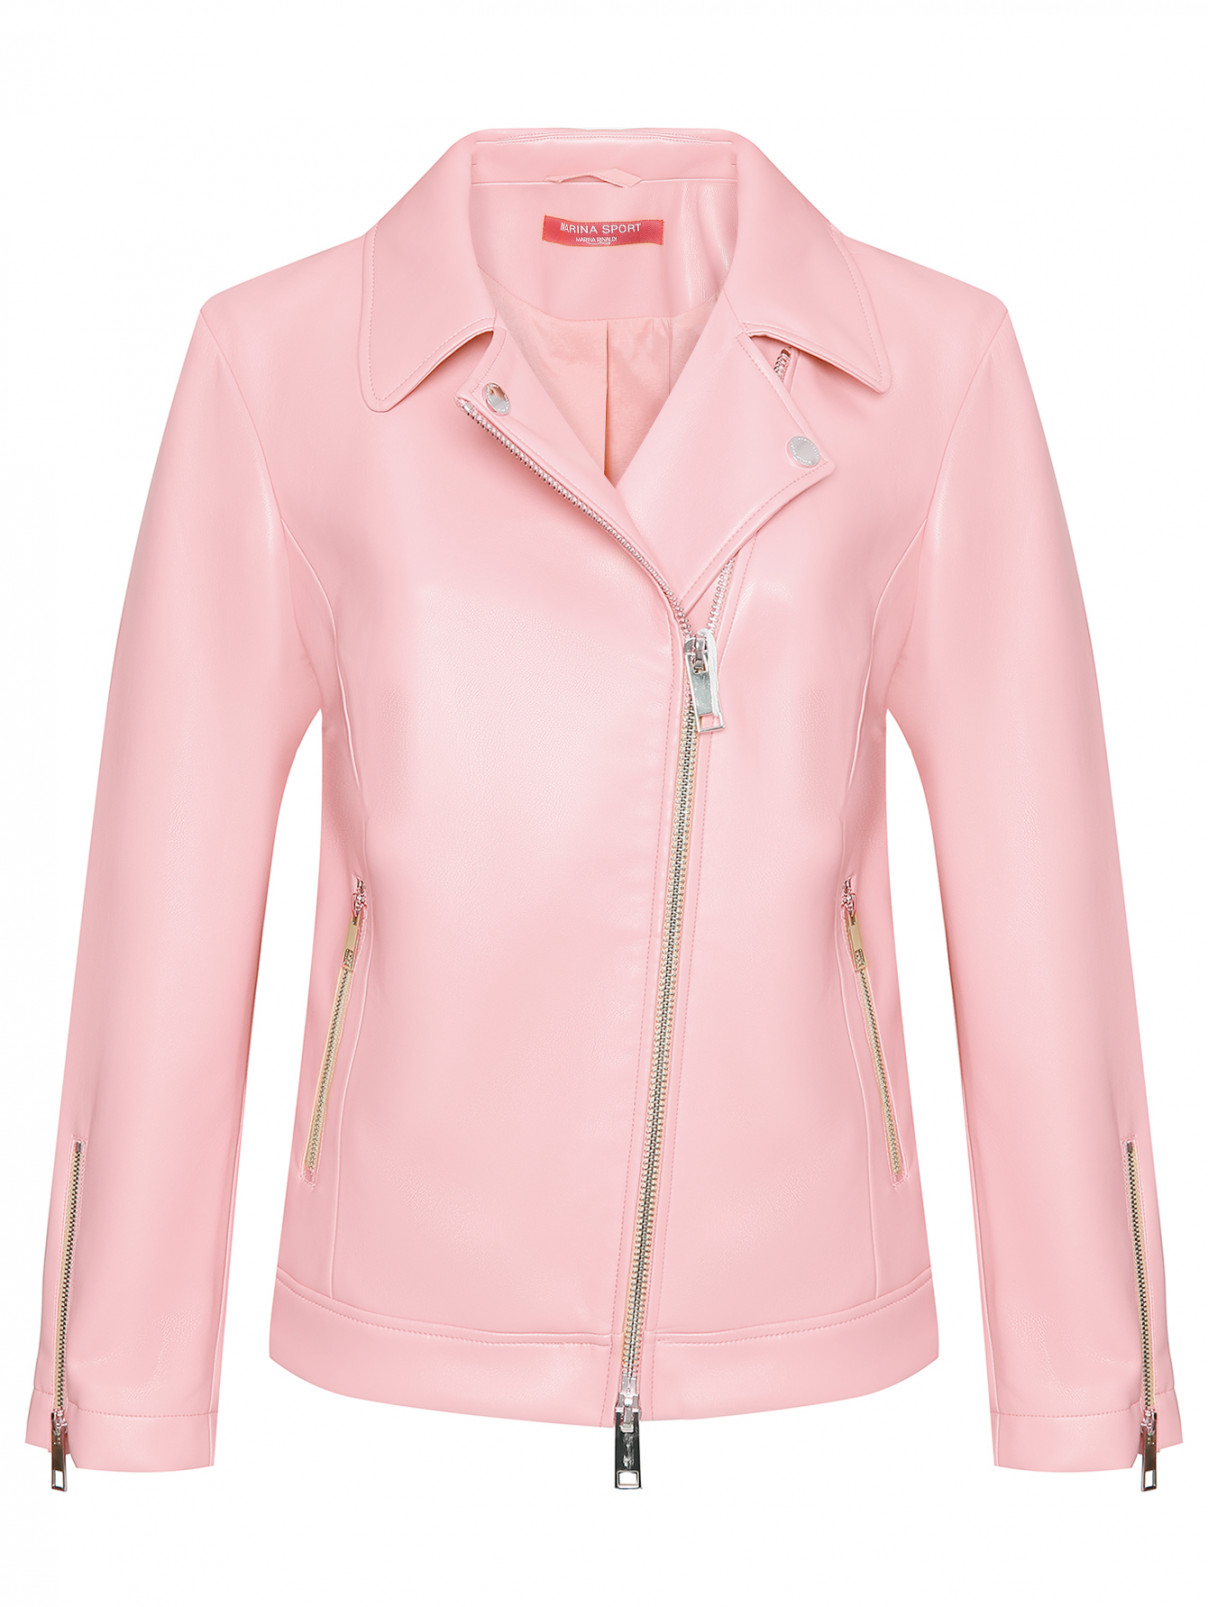 Куртка из эко-кожи на молнии Marina Rinaldi  –  Общий вид  – Цвет:  Розовый